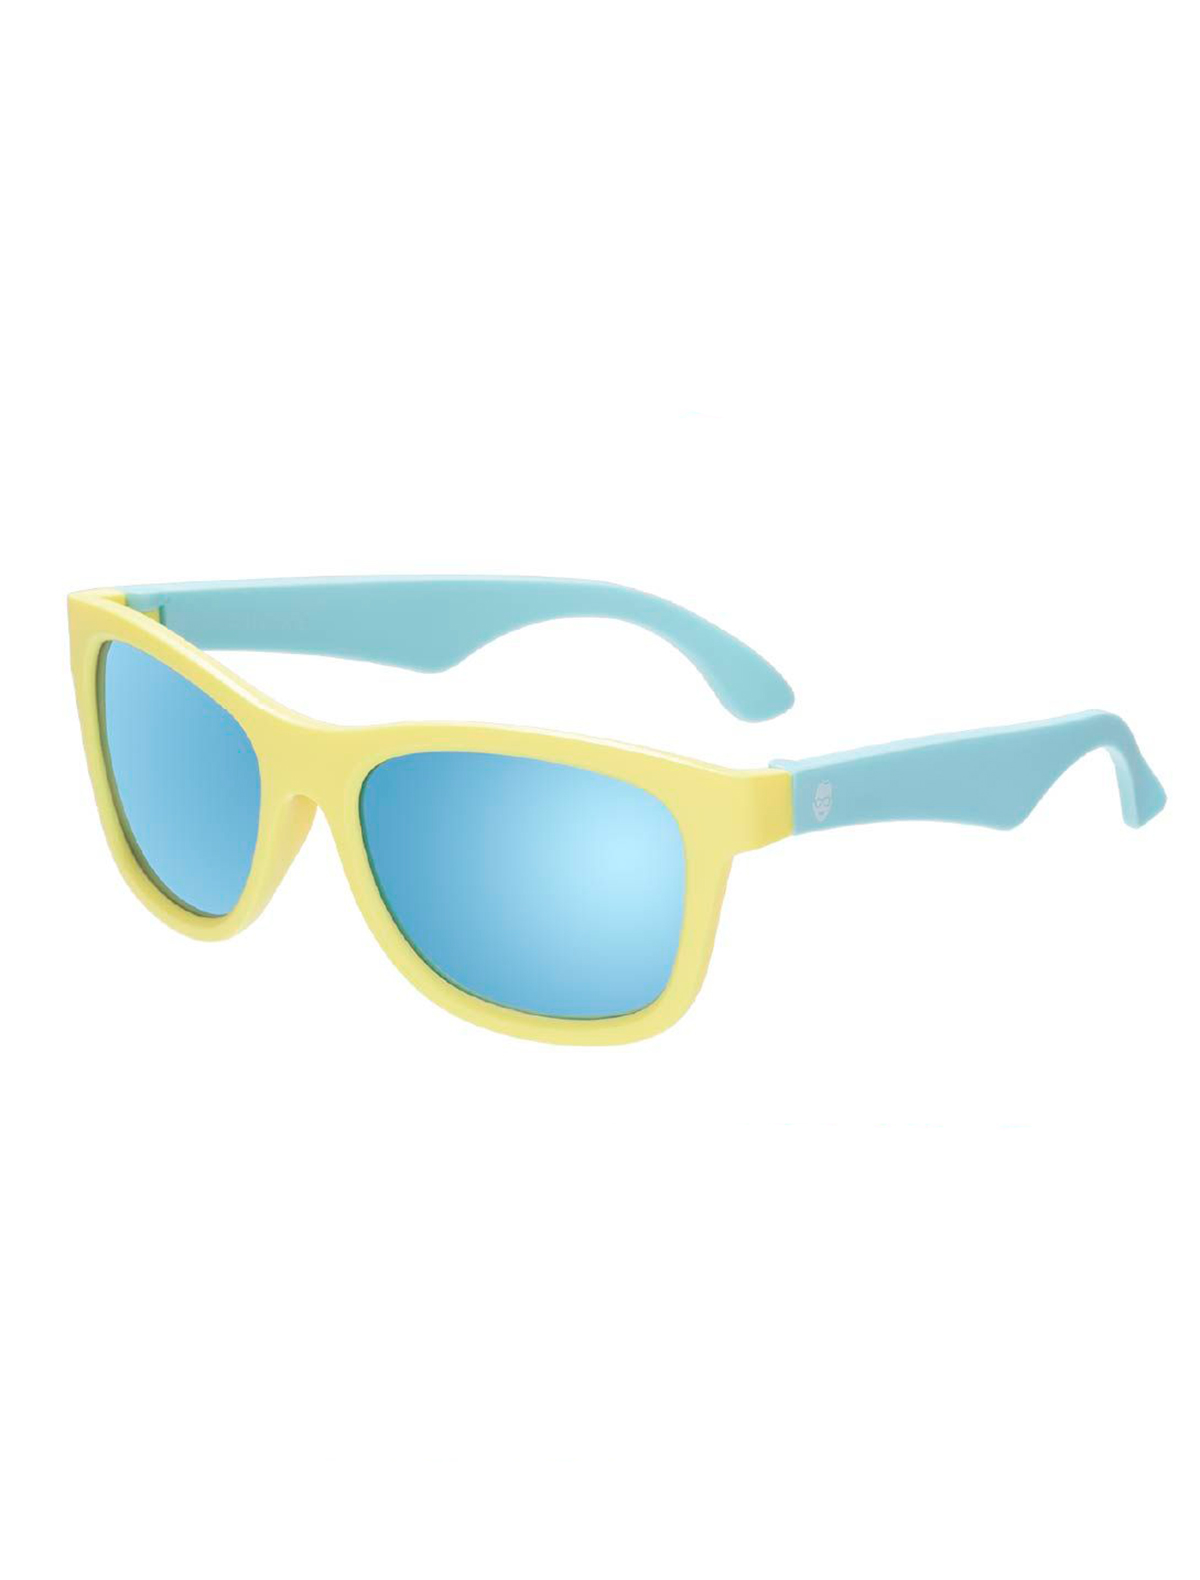 солнцезащитные очки babiators малыши, голубые